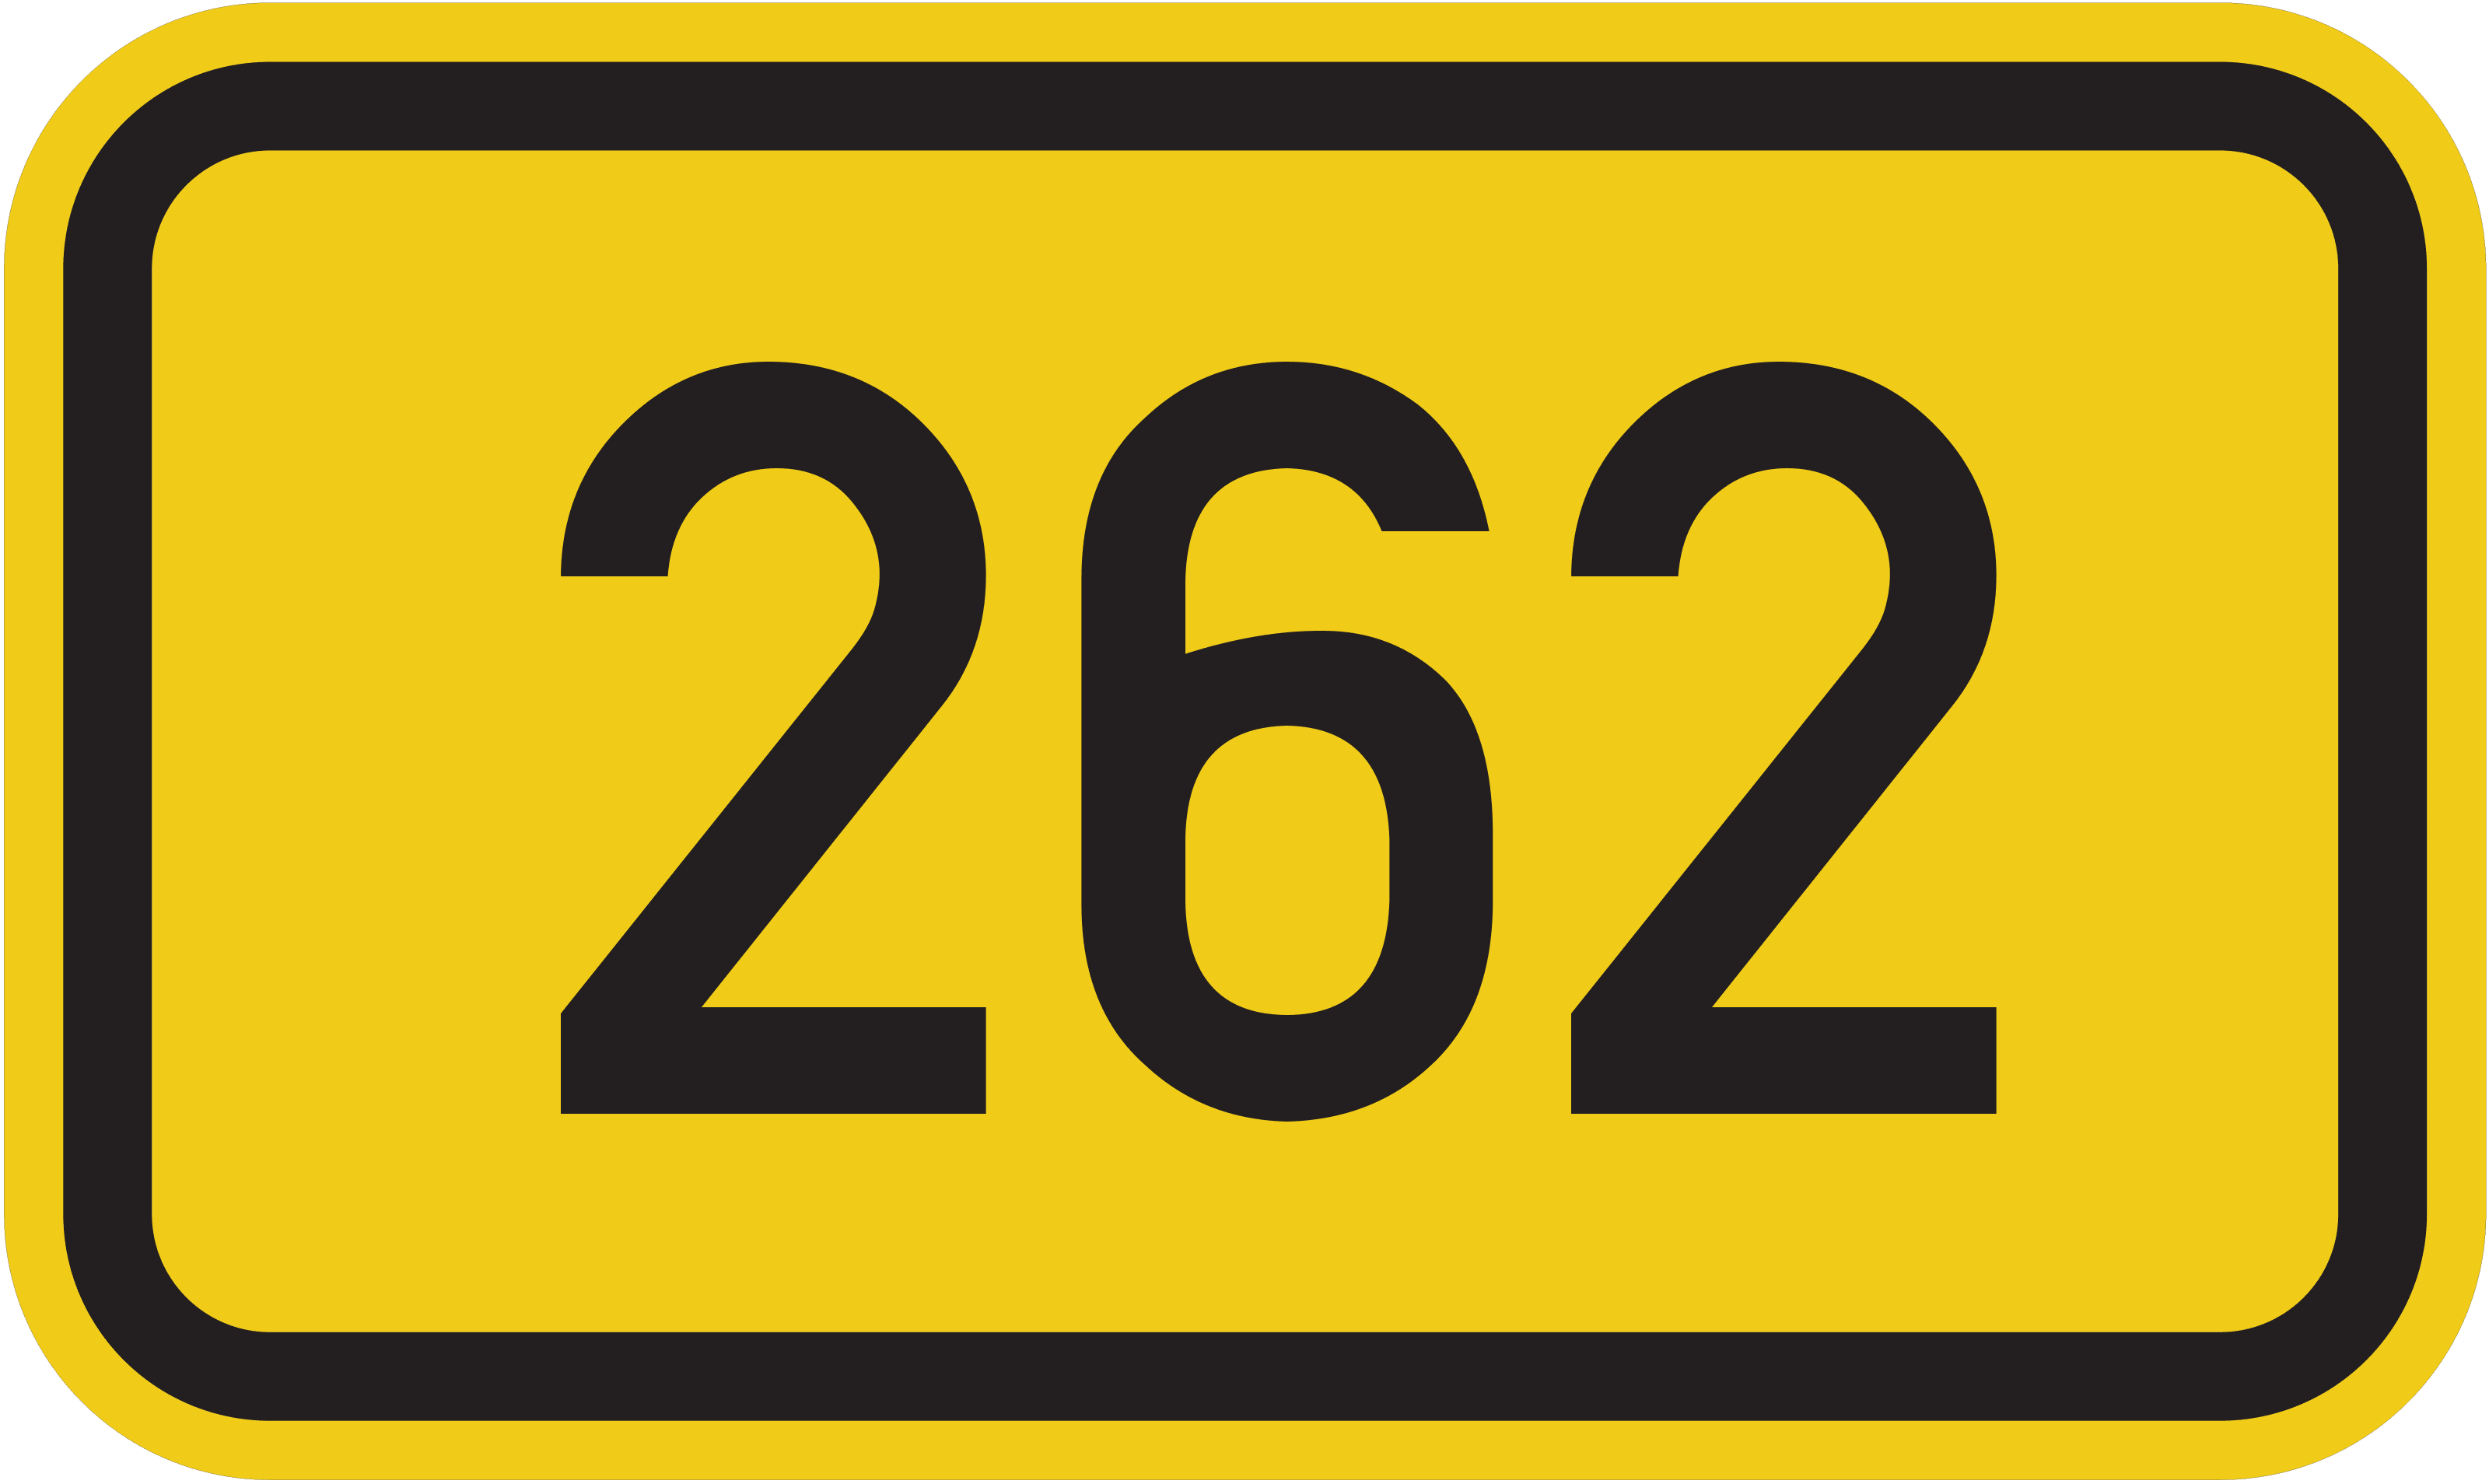 Bundesstraße B 262